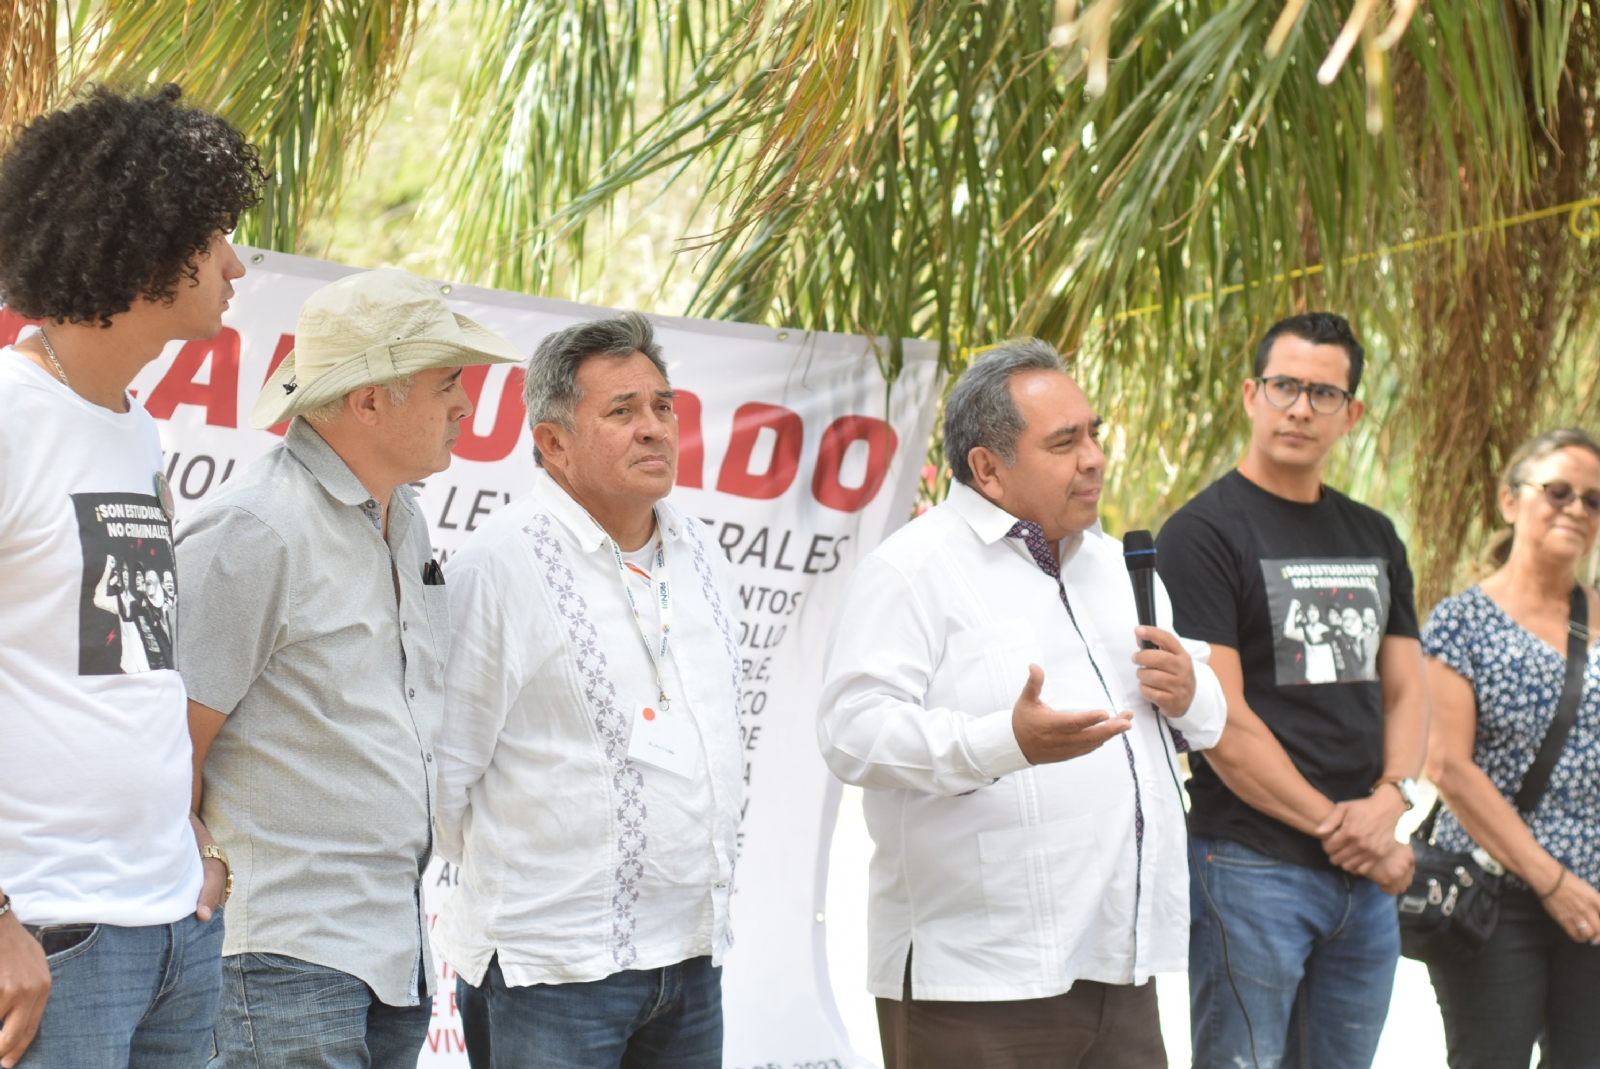 El presidente de la agrupación, Rubén Presuel, informó que el conflicto se deriva de una permuta ilegal que realizó la Comuna meridana en la zona